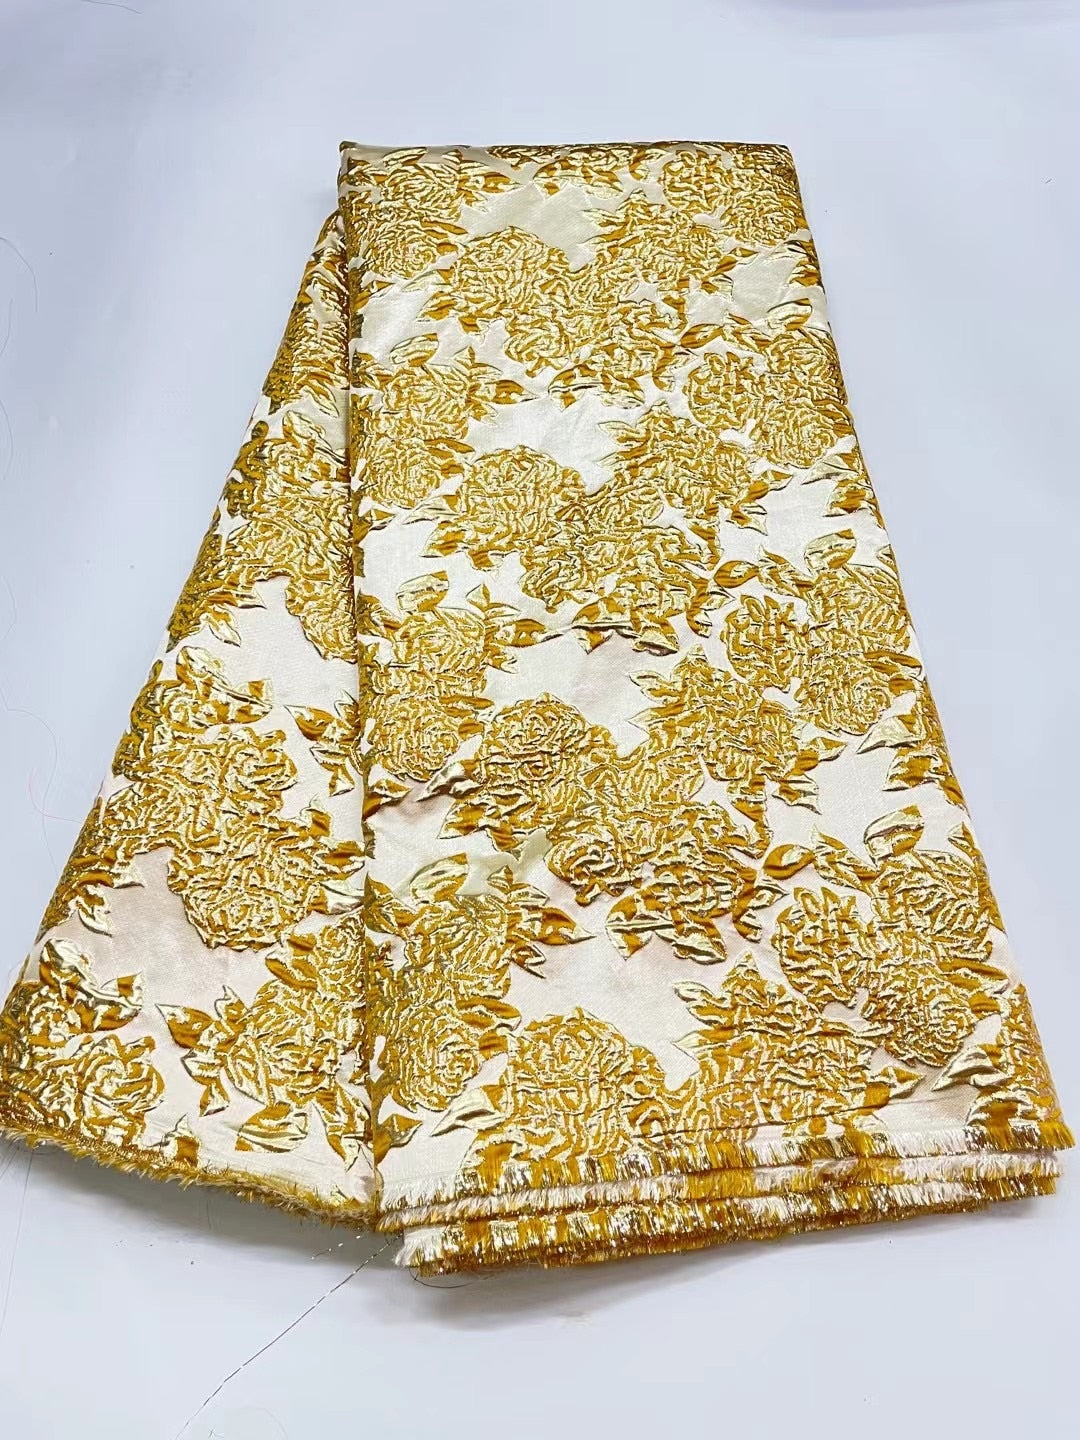 5 YARDS / 10 COLORI / Tessuto per abiti da giacca alla moda in broccato jacquard di viscosa floreale dorato